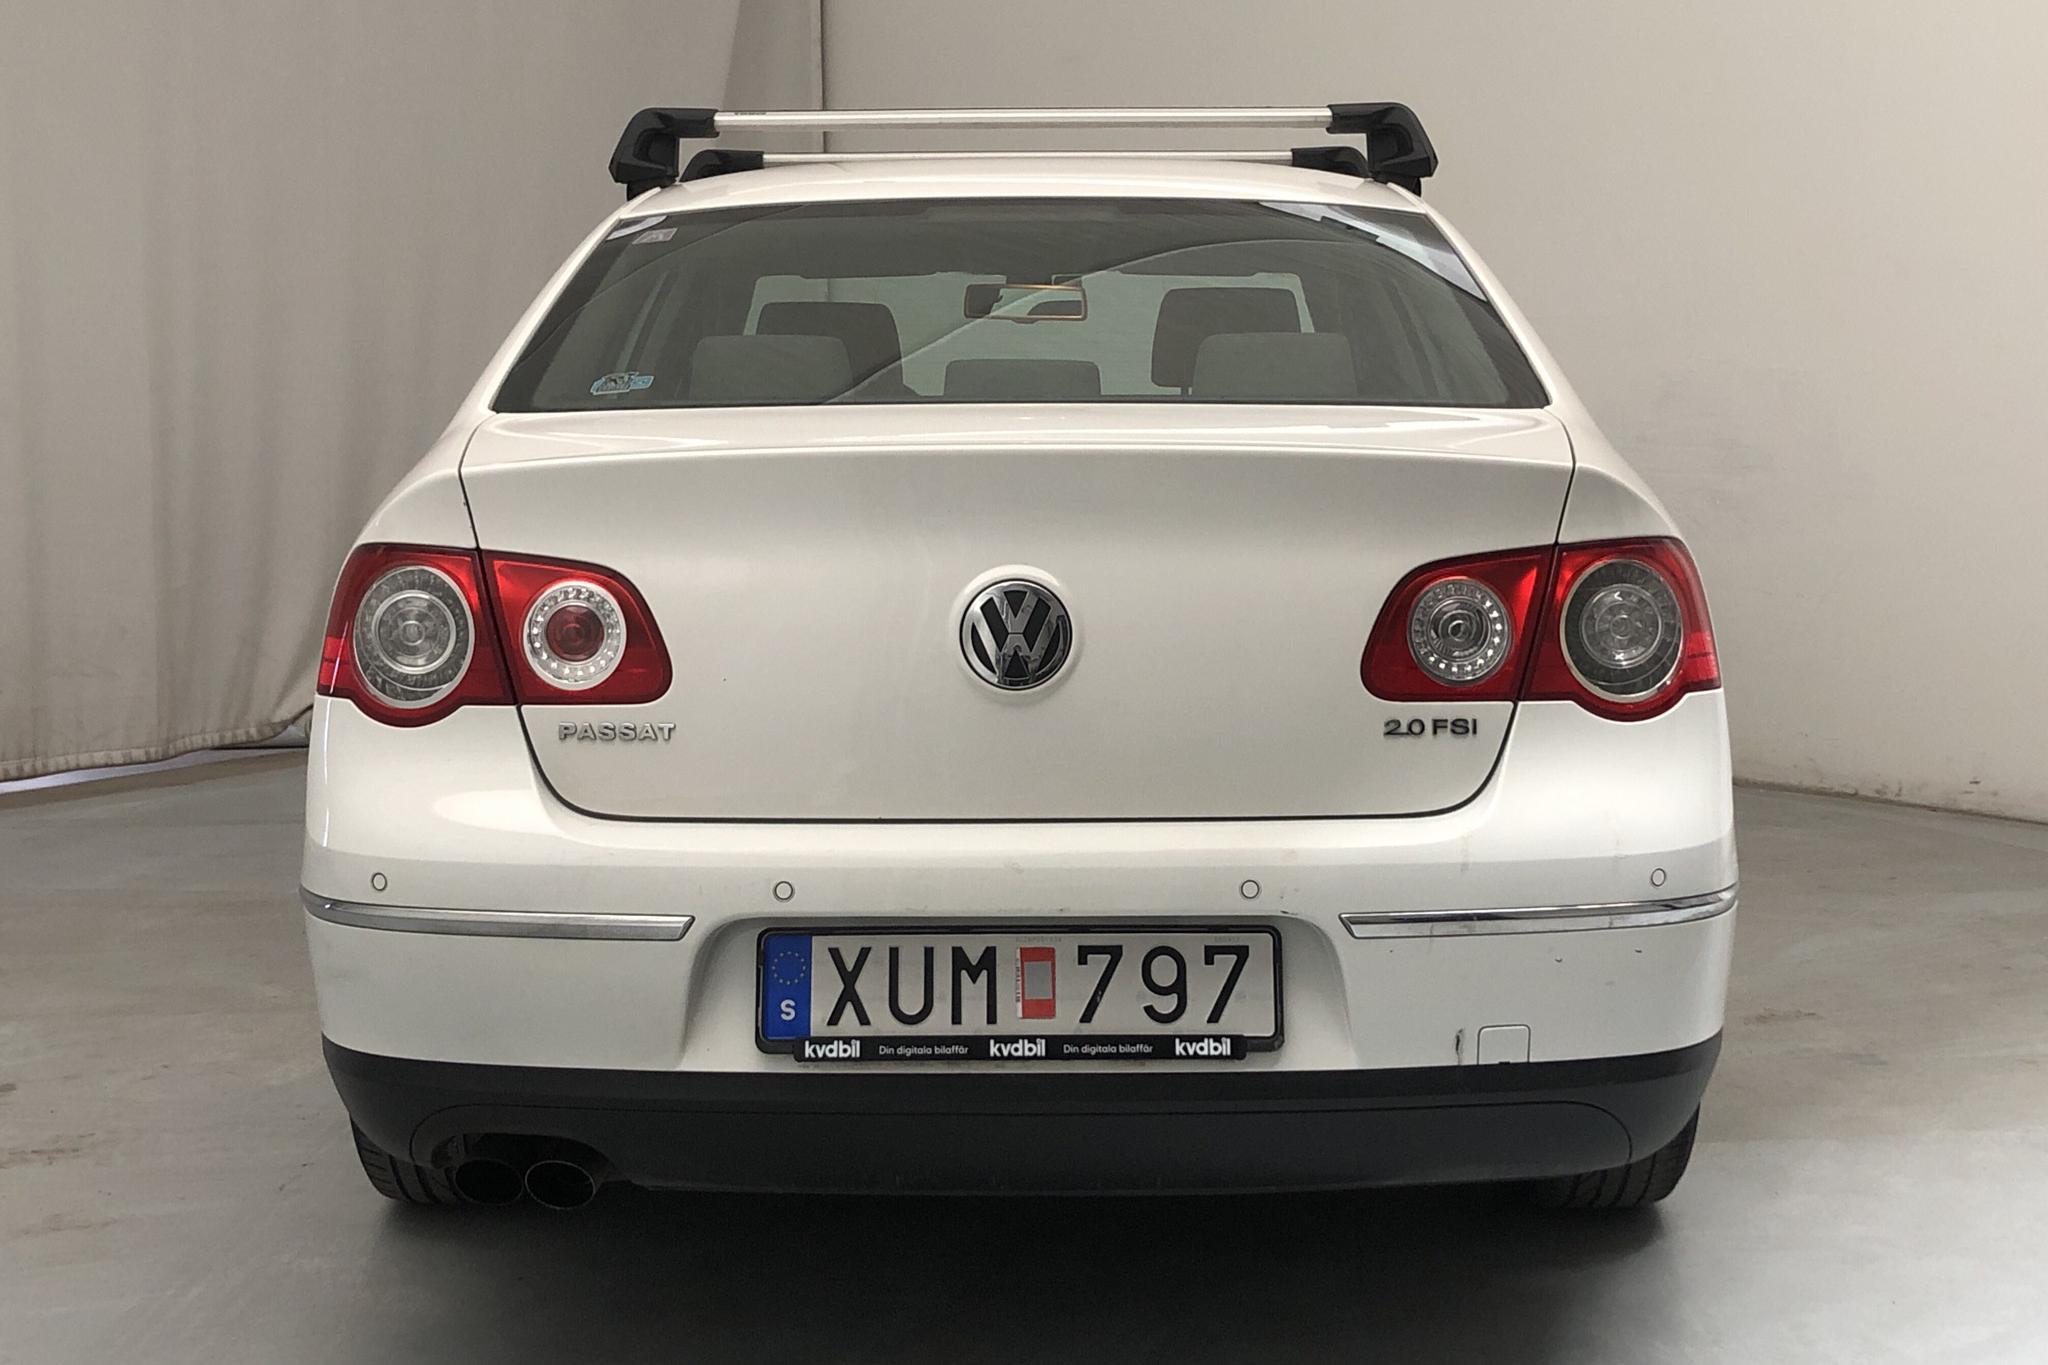 VW Passat 2.0 FSI (150hk) - 103 030 km - Automatic - white - 2006